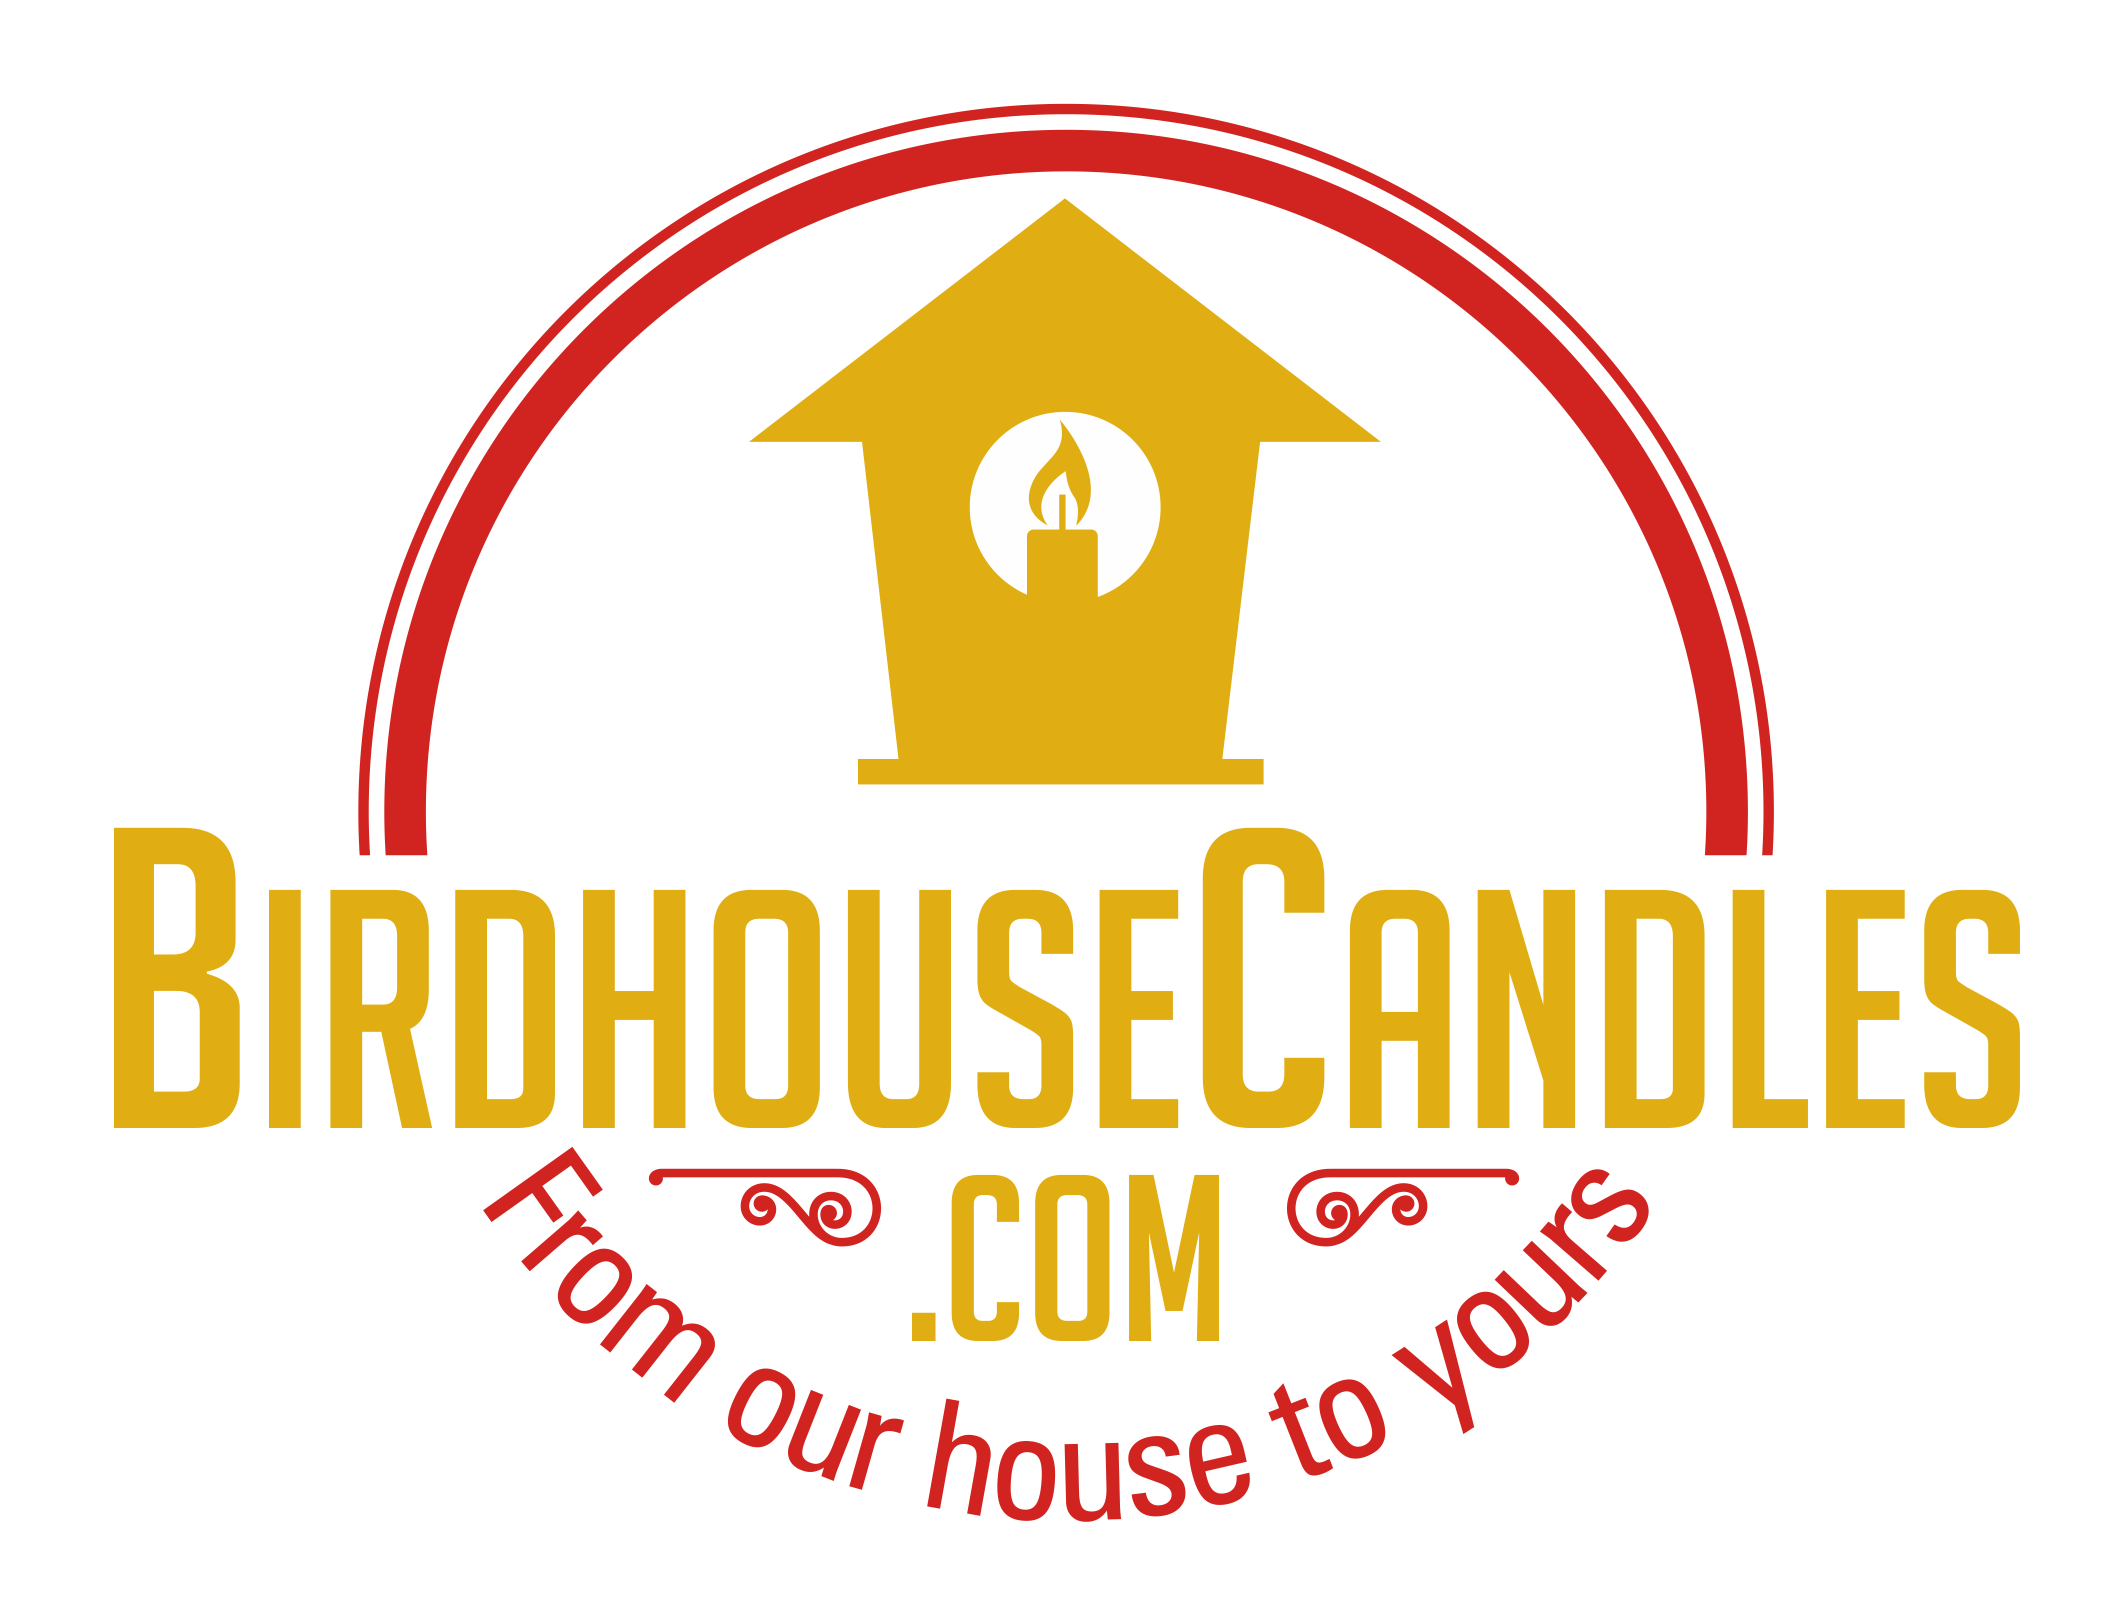 BirdhouseCandles.com